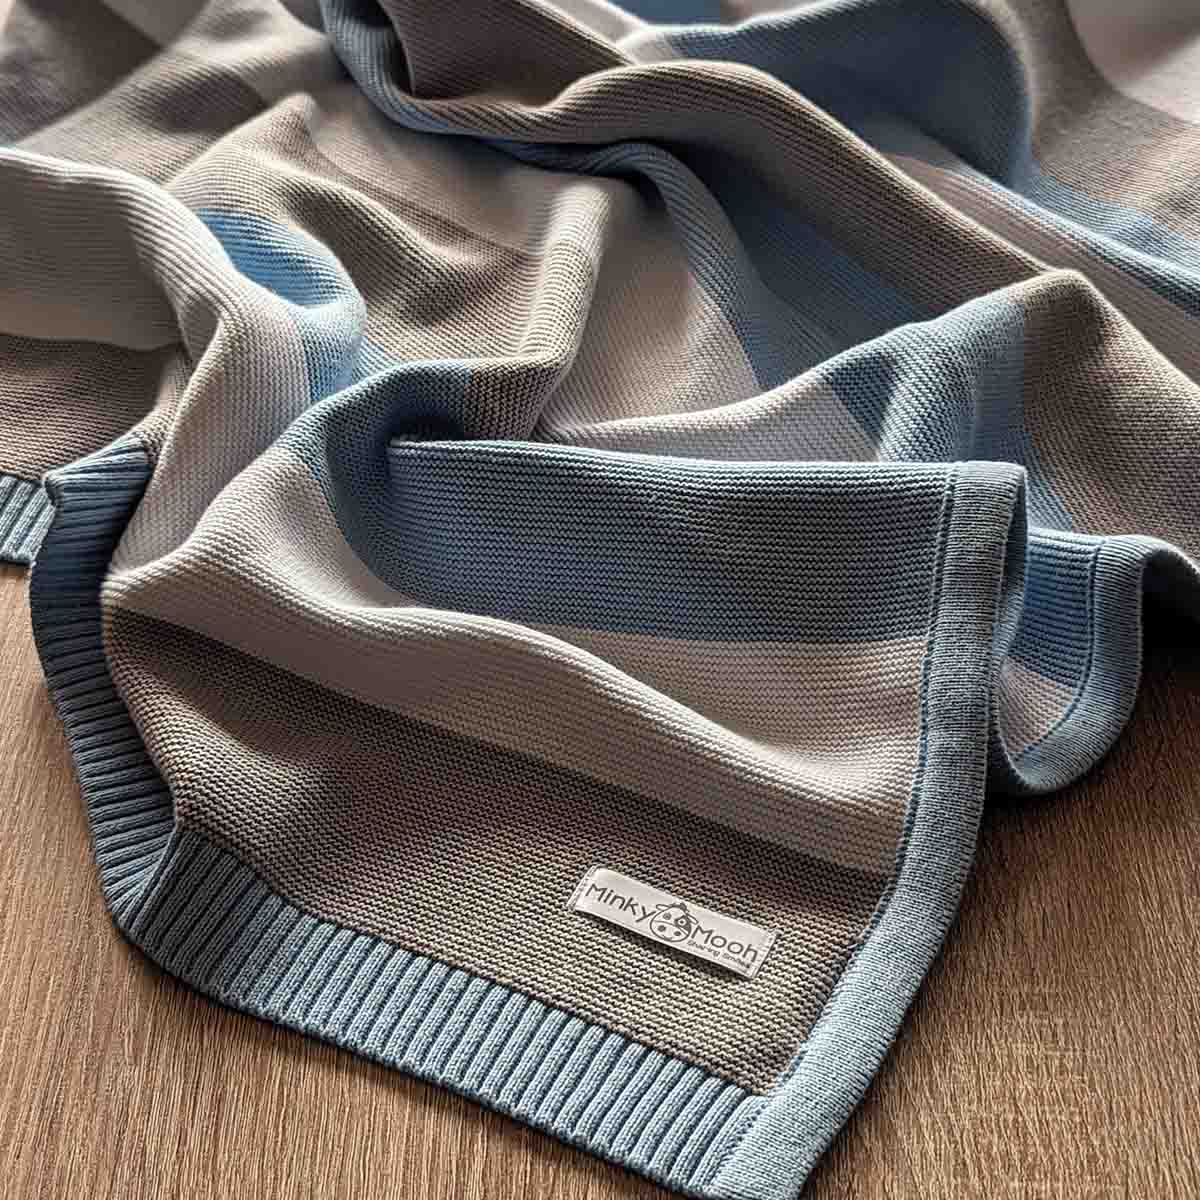 Detailansicht einer ausgebreiteten blau-grau-weißen Bio-Baumwolldecke auf einem Holzboden.